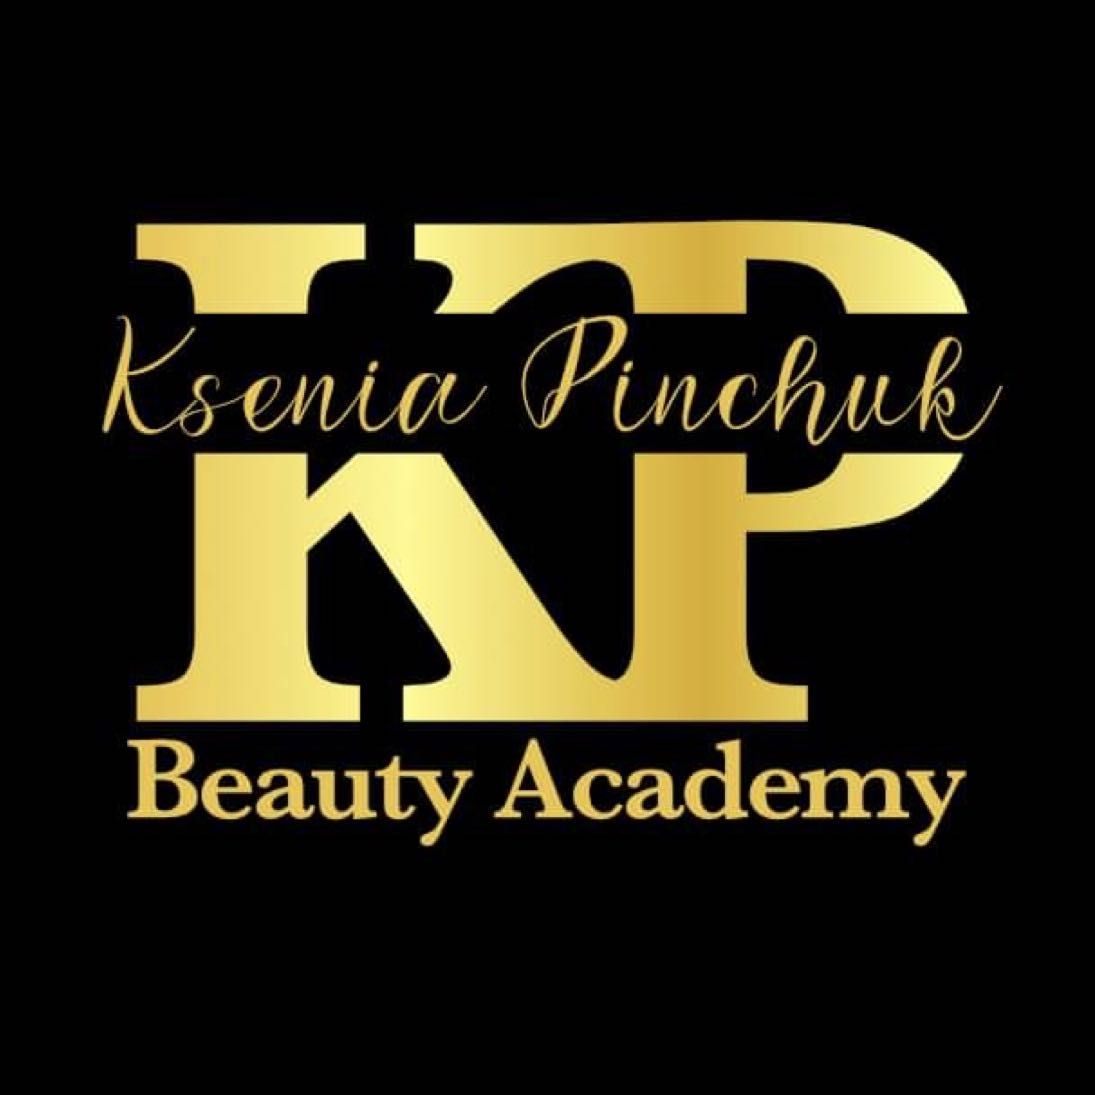 Beauty Academy by Ksenia Pinchuk, Głogowska 30, 60-736, Poznań, Grunwald